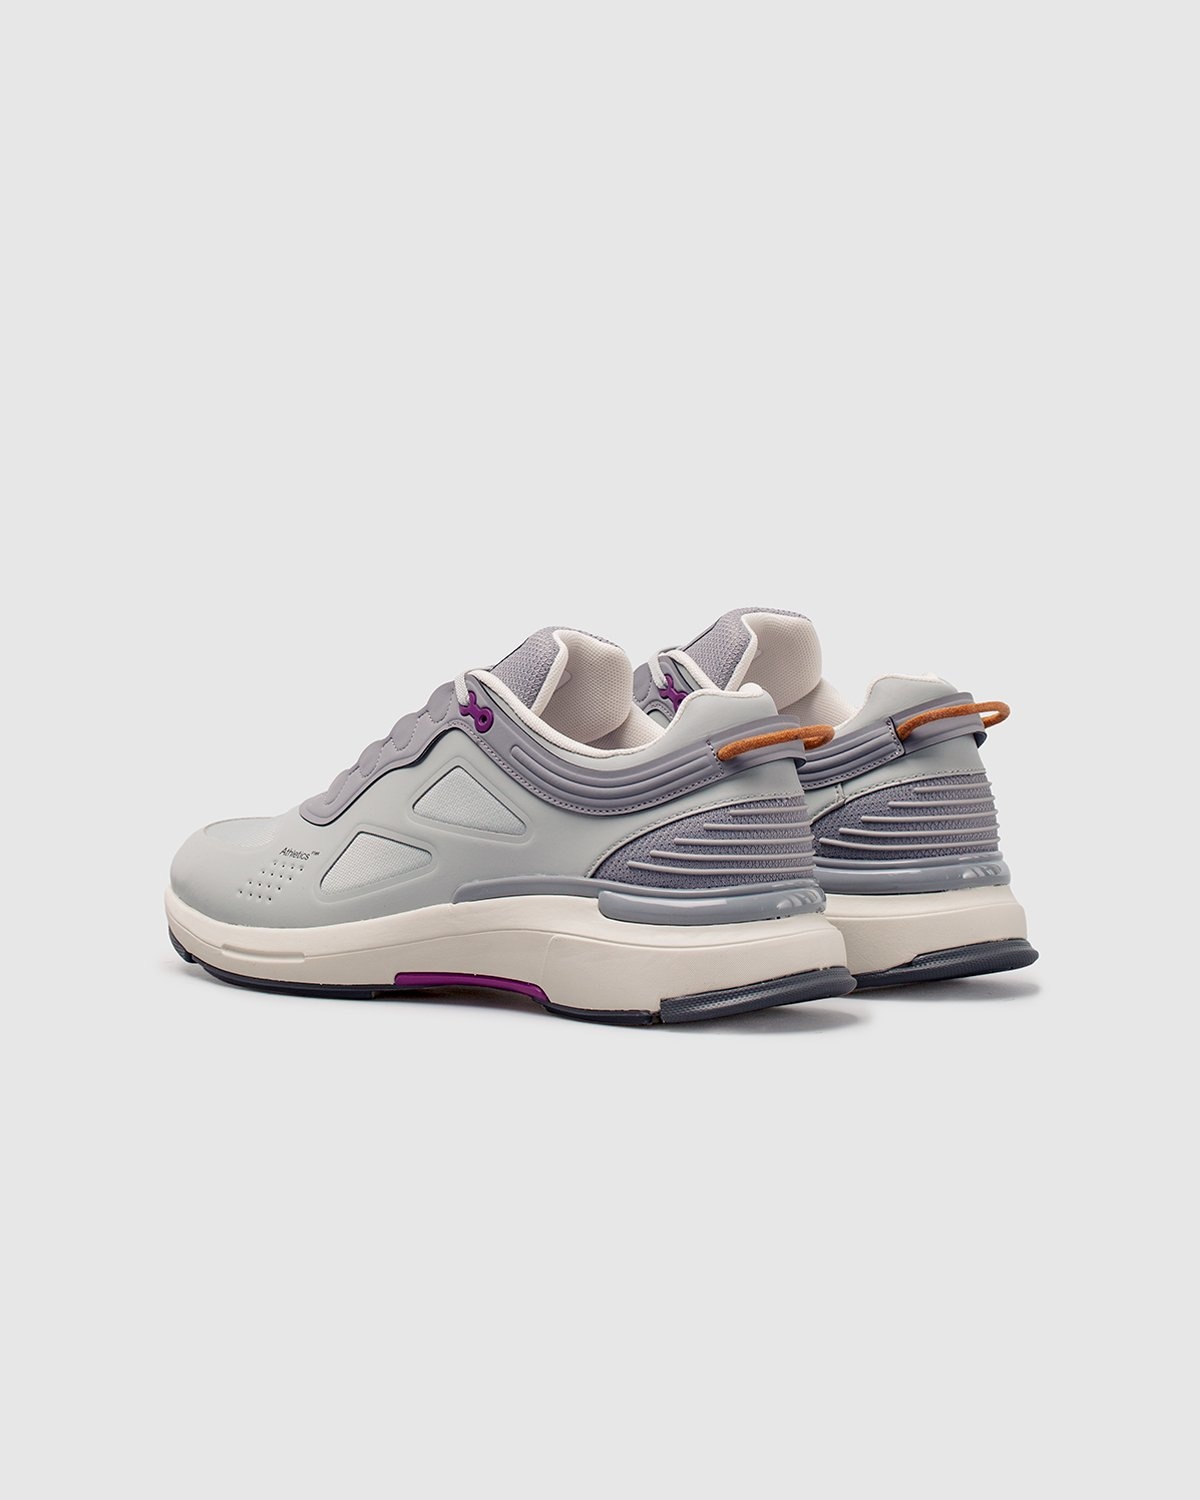 Athletics Footwear – ONE.2 Grey / Formal Grey / G3 Grape - Low Top Sneakers - Grey - Image 3